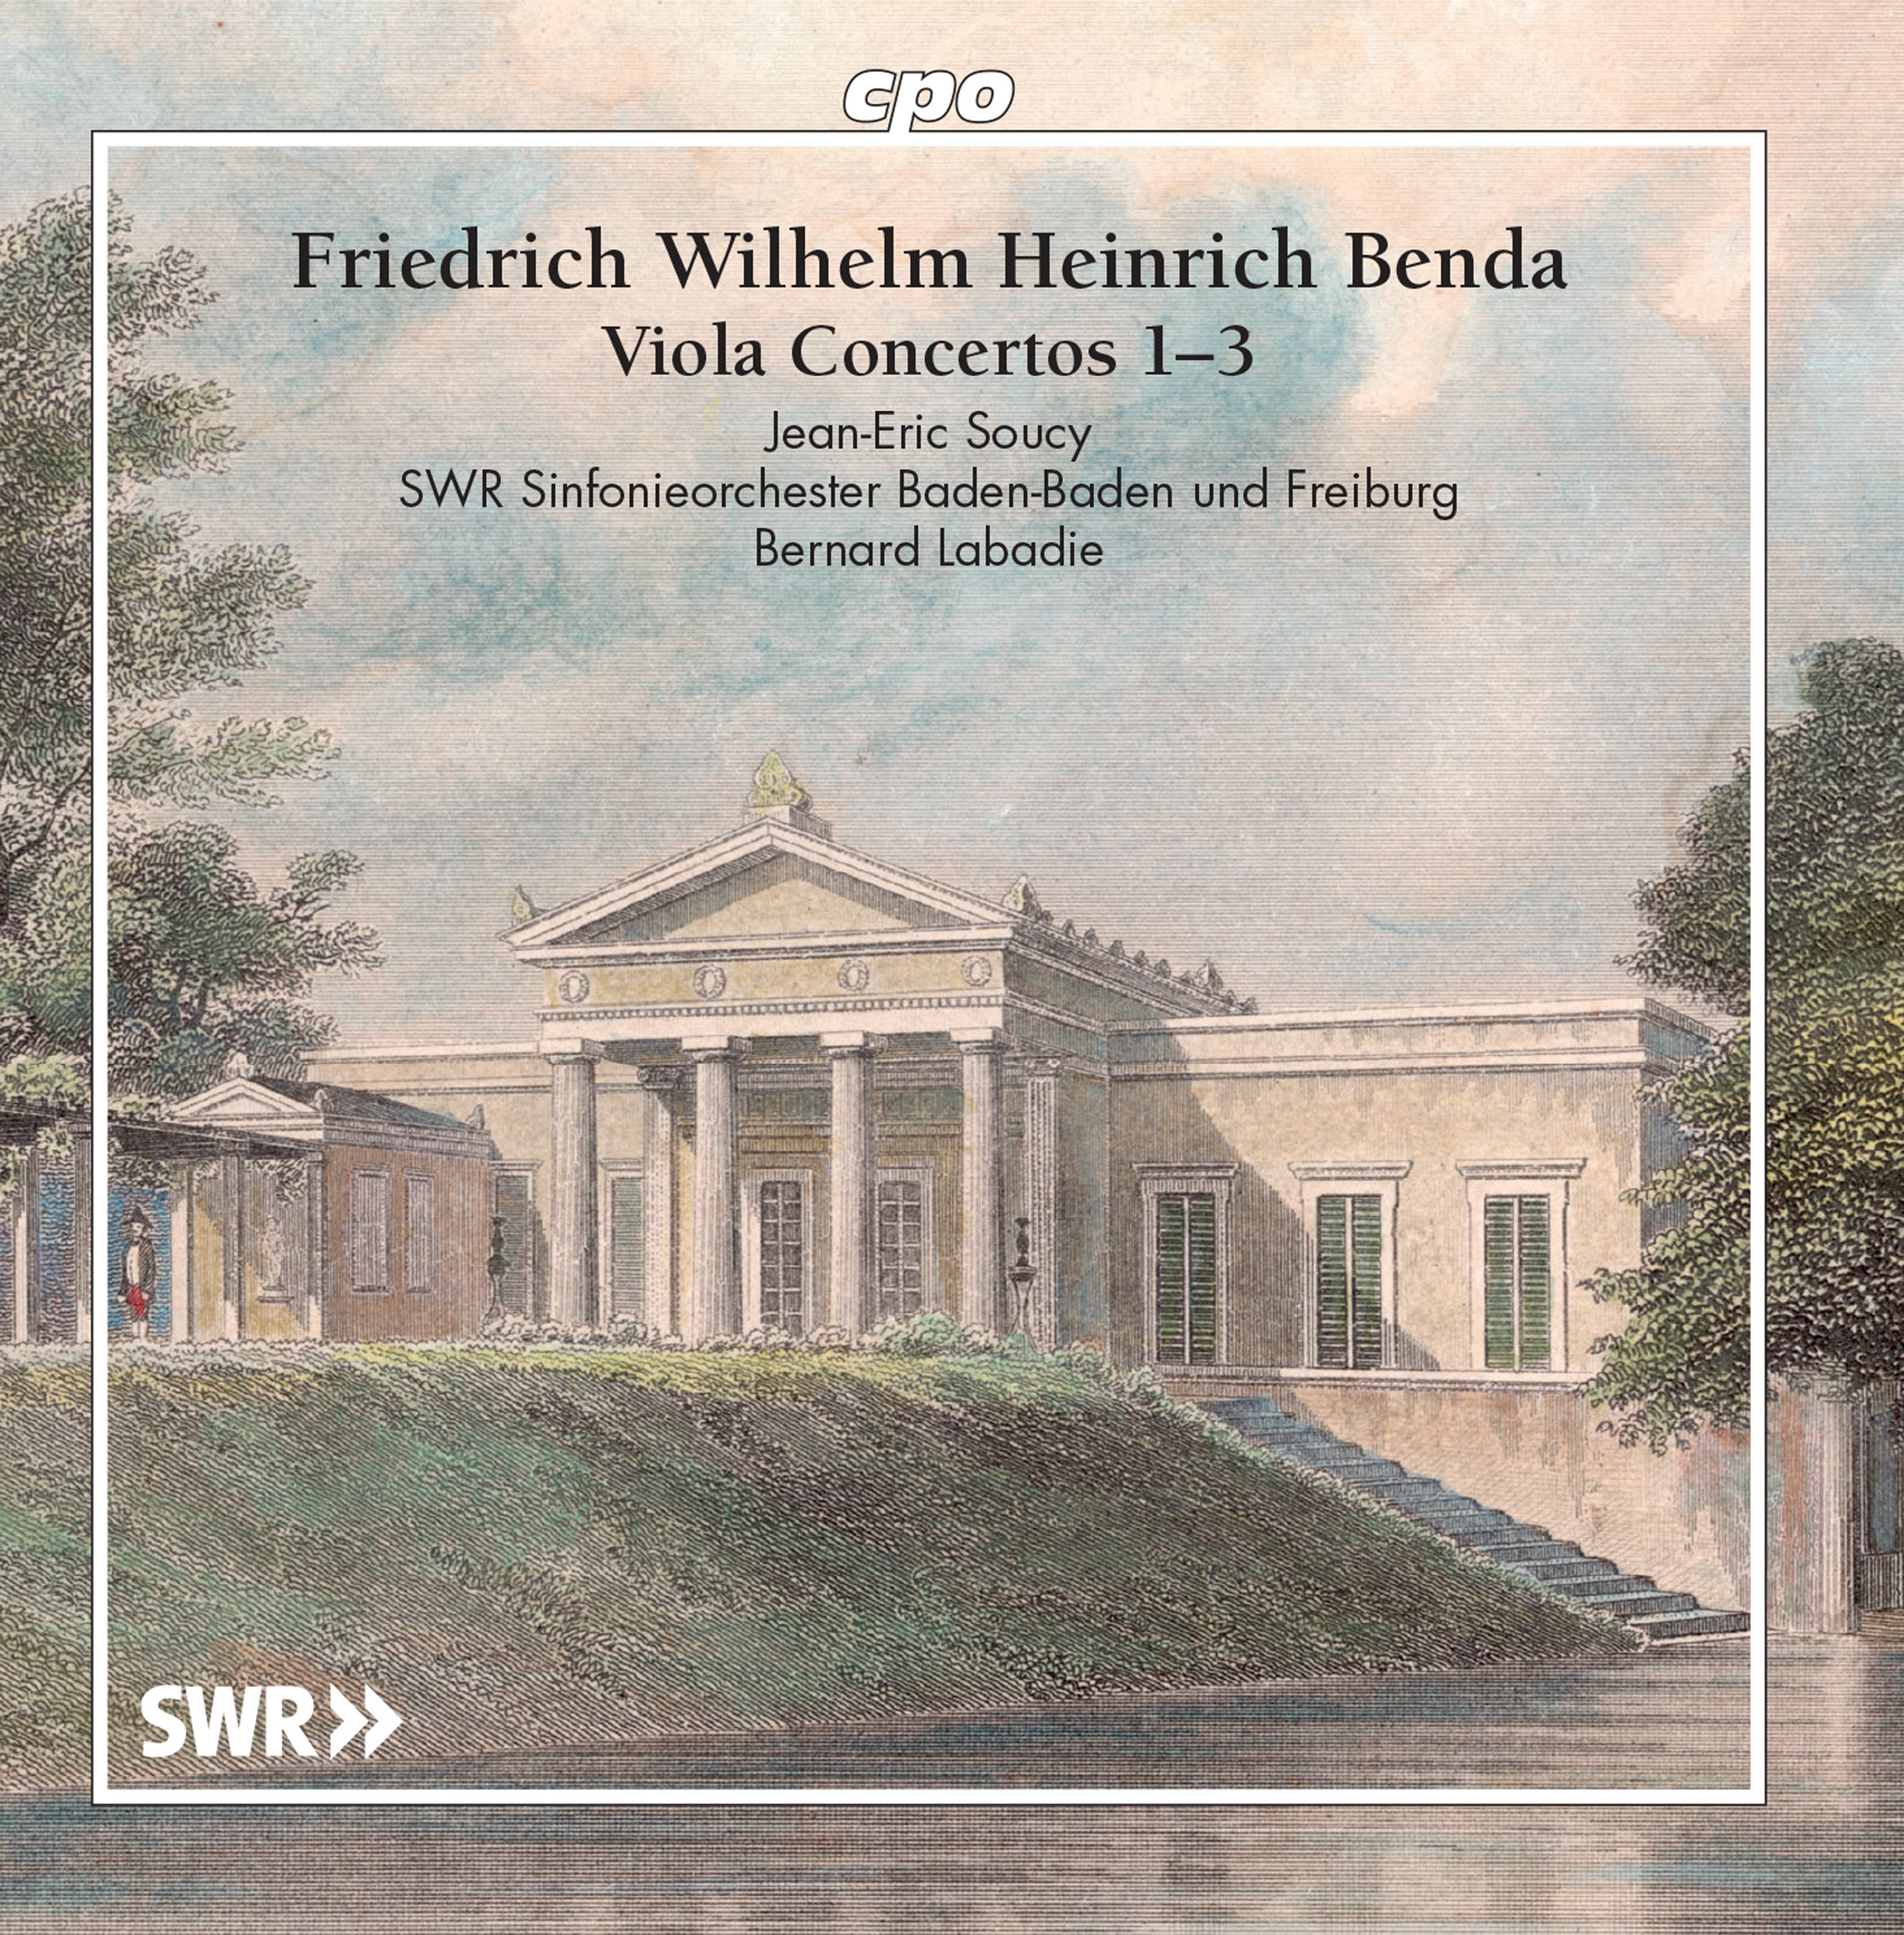 Viola Concerto No. 2 in E-Flat Major, LorB 315: II. Largo con sordino